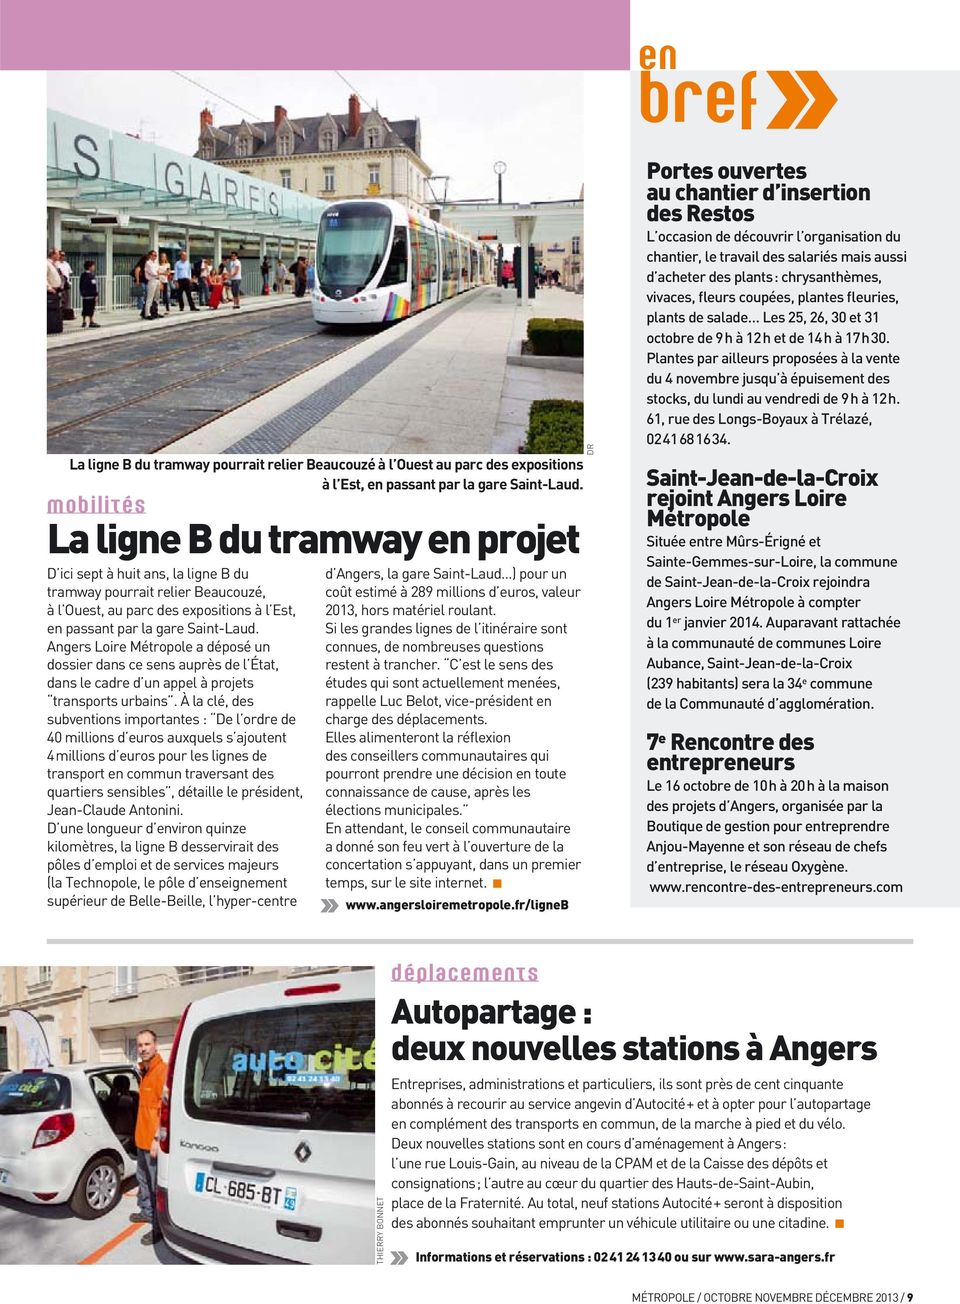 Angers Loire Métropole a déposé un dossier dans ce sens auprès de l État, dans le cadre d un appel à projets transports urbains.